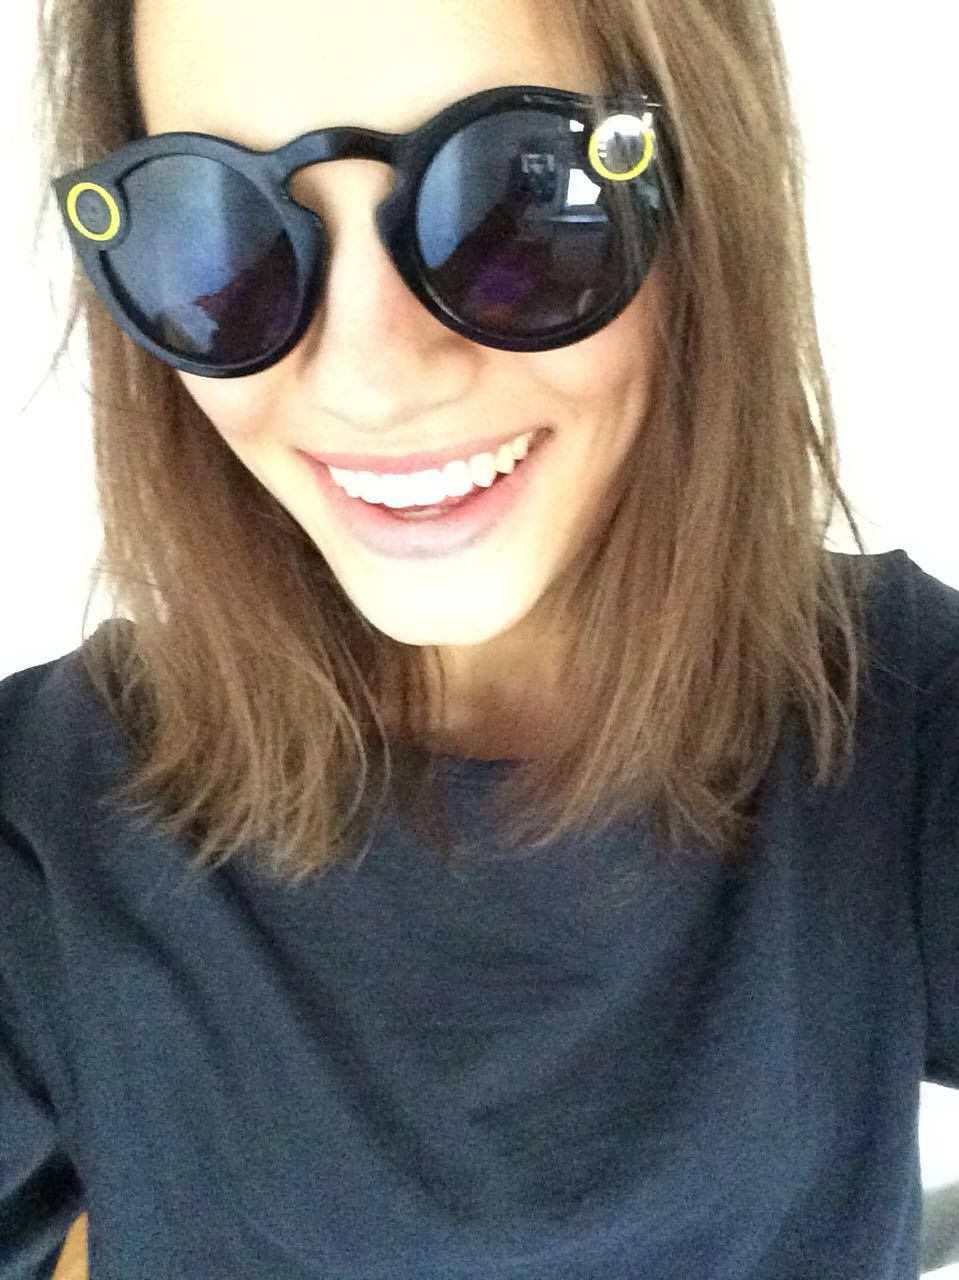 Spectacles - sprawdzamy okulary Snapchata